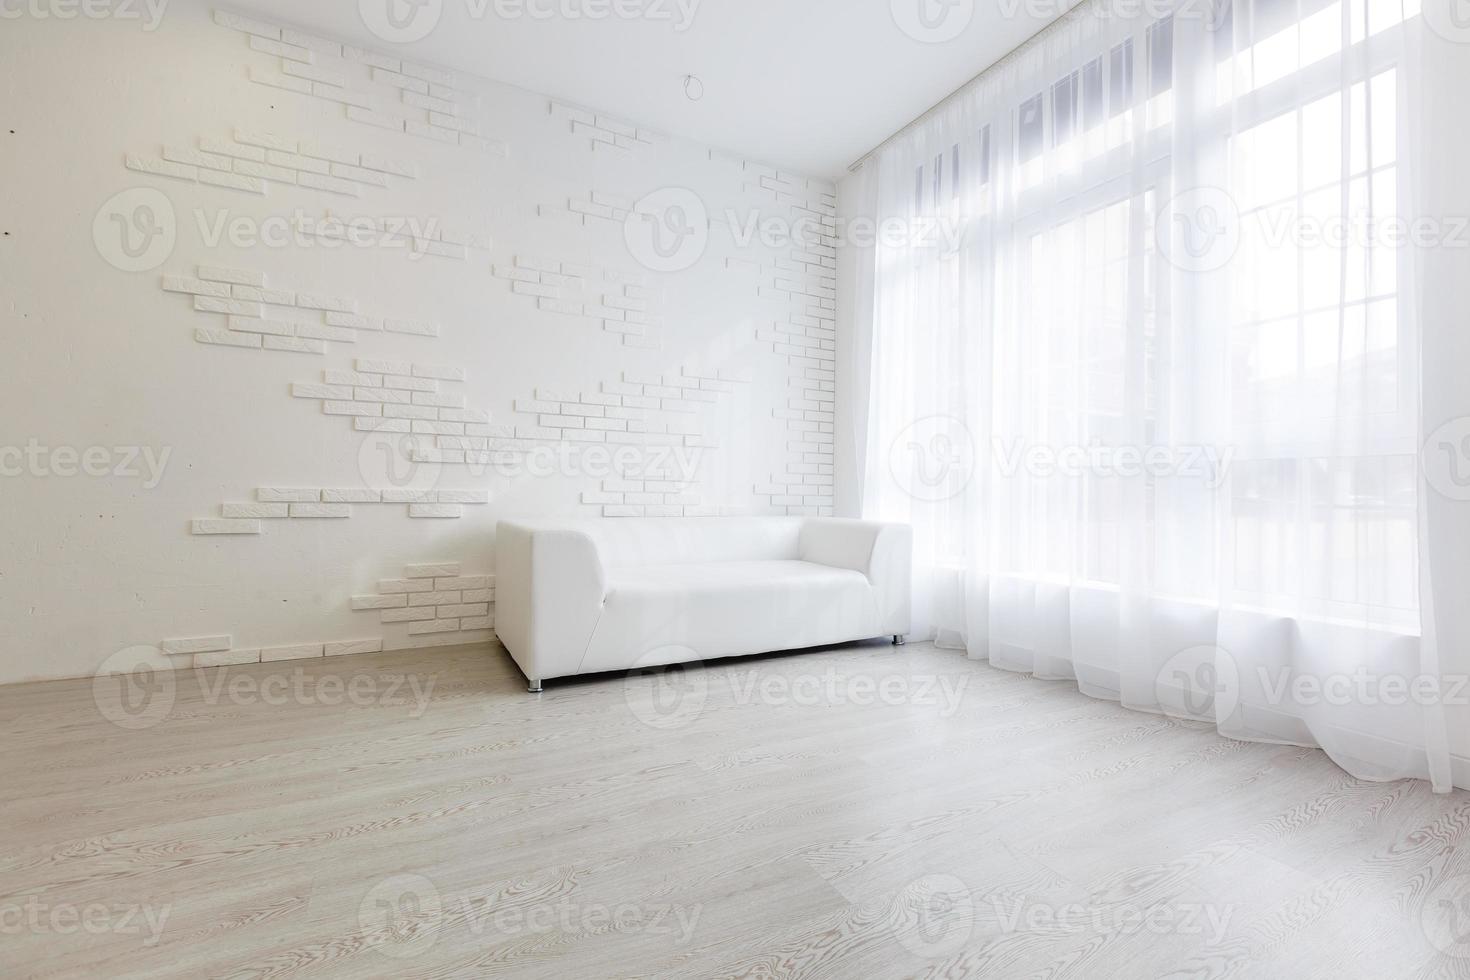 Innenraum des Wohnzimmers im modernen Stil mit Stoffsofa, Beistelltisch und leerer weißer Wand auf Holzboden foto